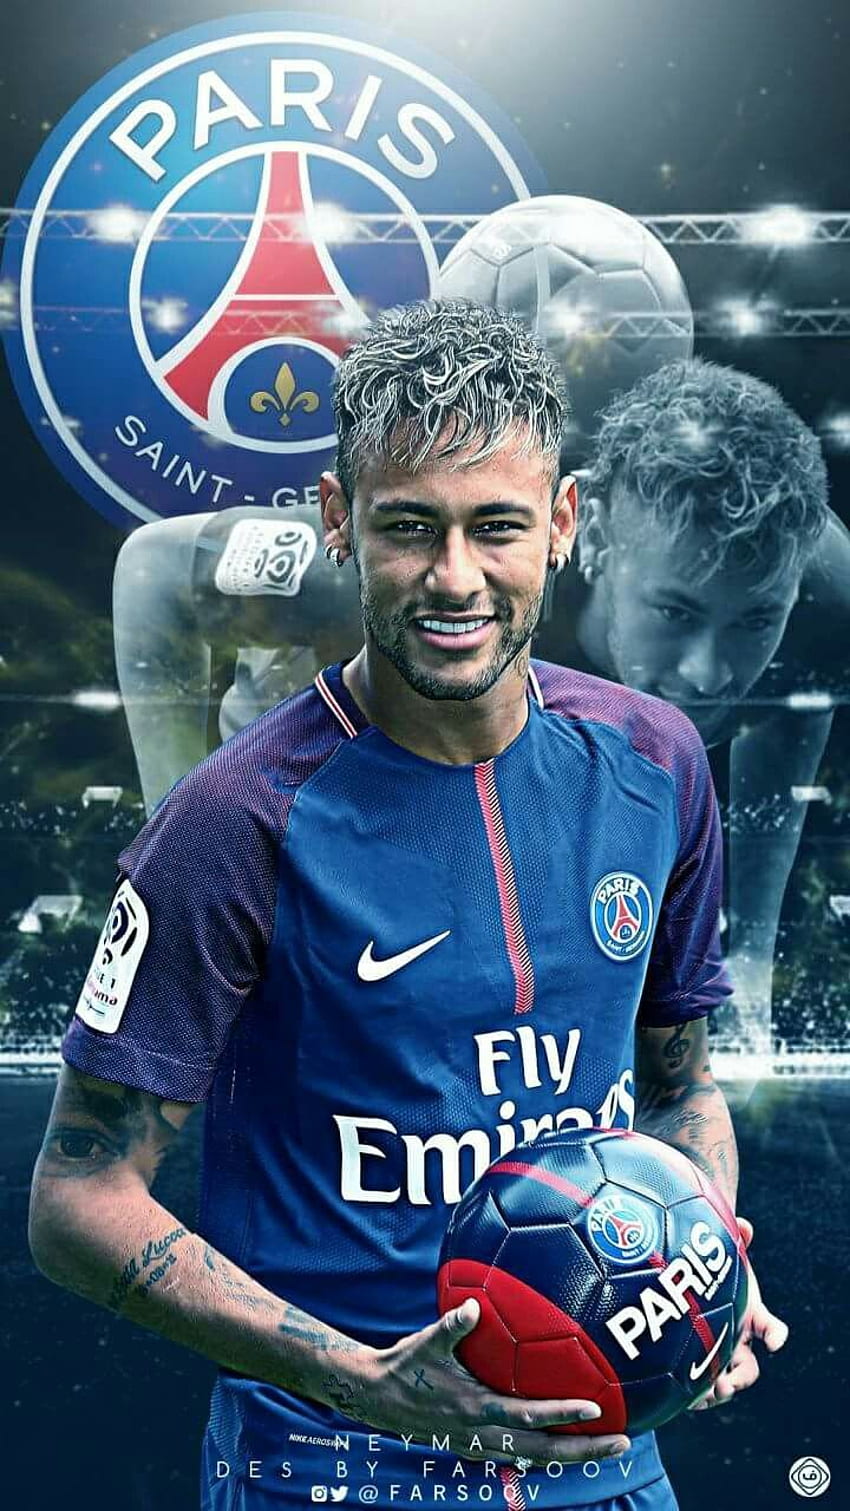 Màn hình điện thoại của bạn sẽ cực kỳ ấn tượng khi lựa chọn hình nền của Neymar trong màu áo PSG! Đây là cách tuyệt vời để thể hiện tình yêu và sự hâm mộ của bạn dành cho cầu thủ này.